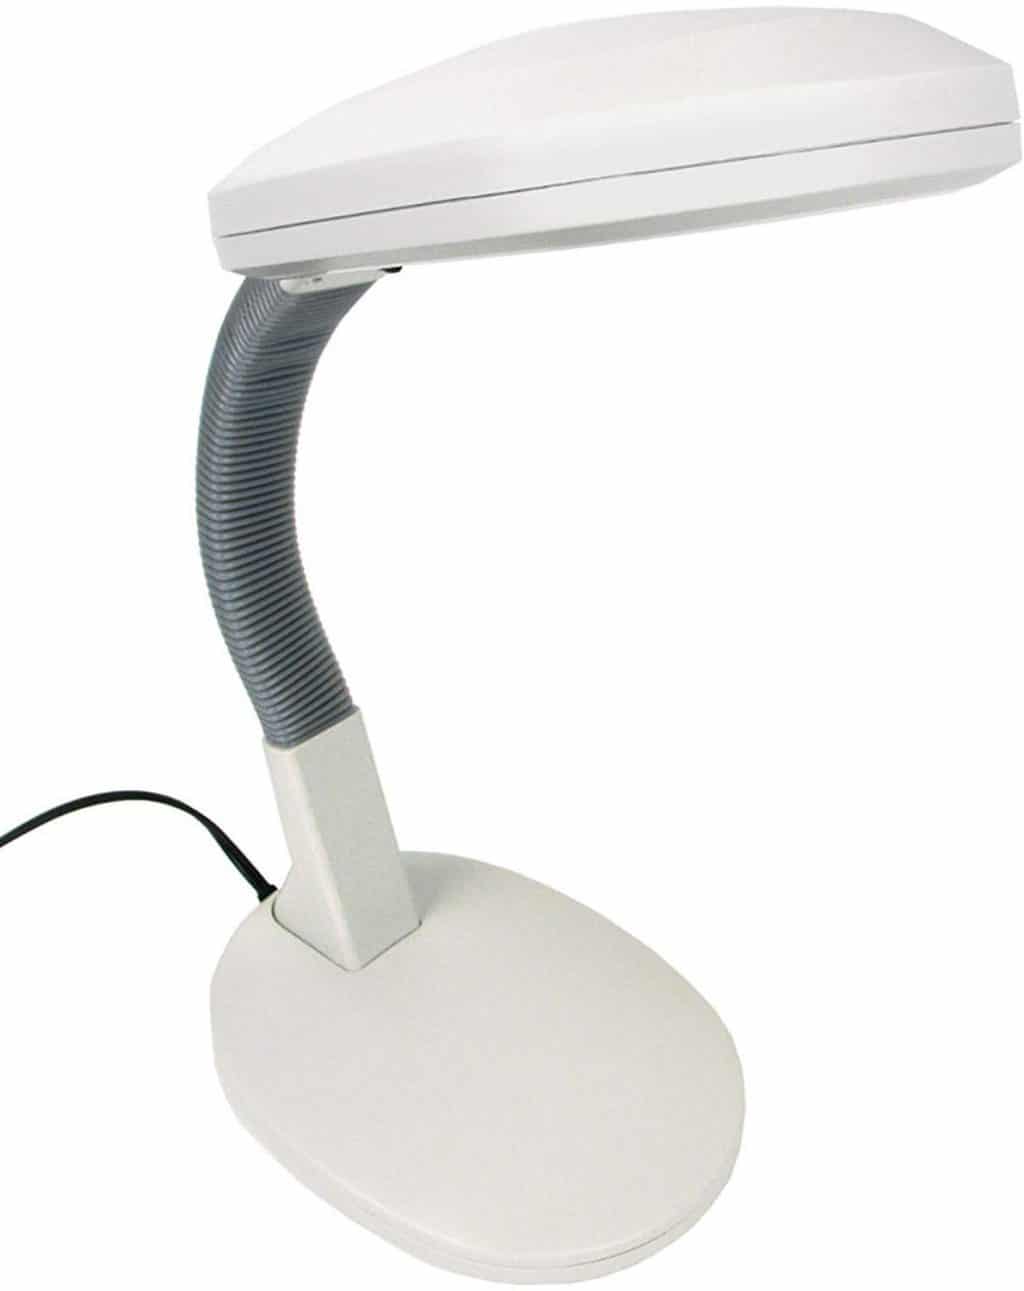 72-0813 Sunlight Desk Lamp by Trademark Home